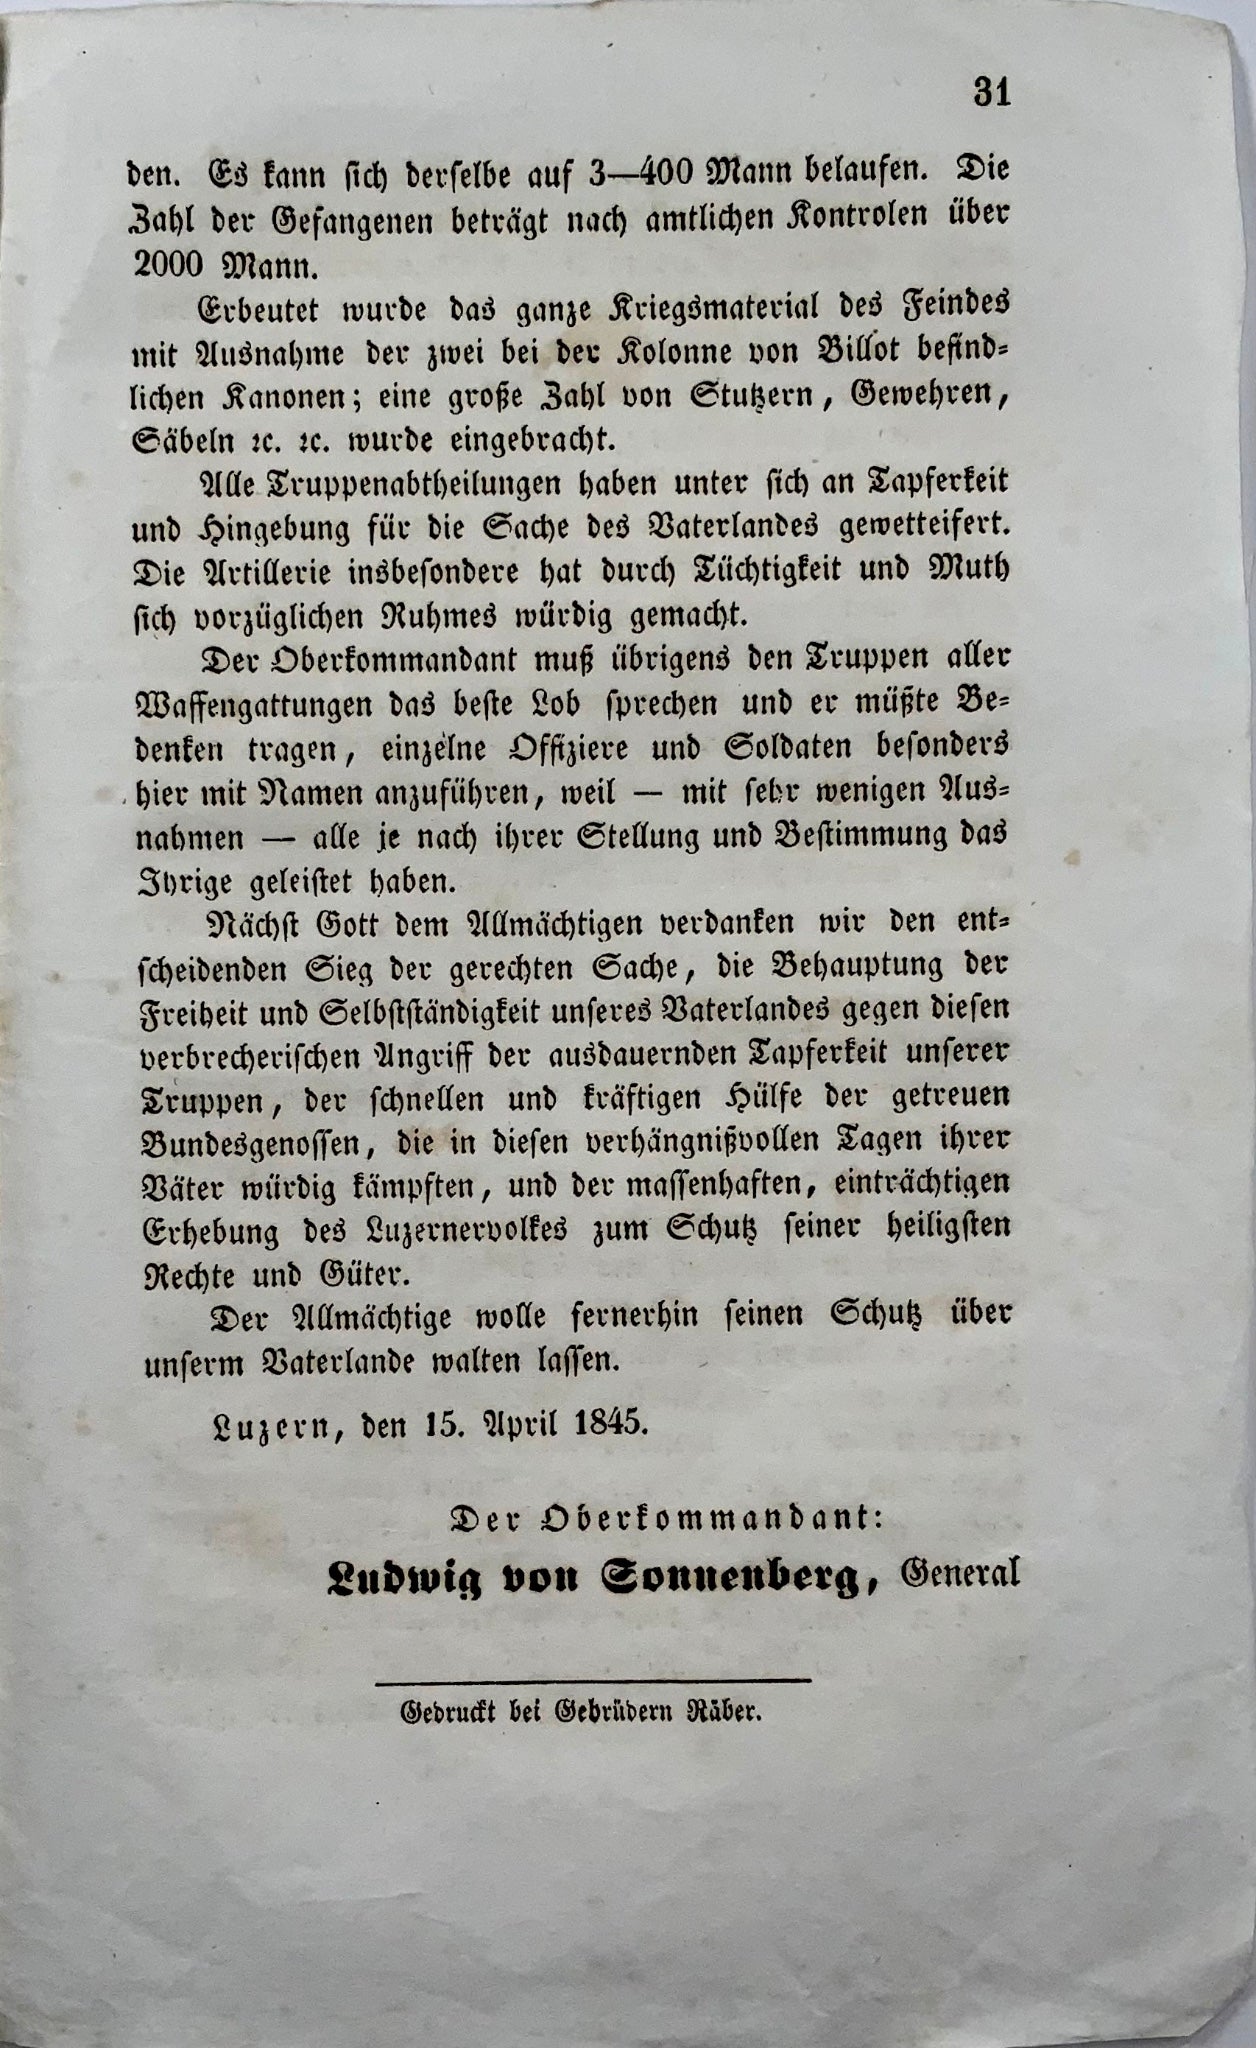 1845 L. Von Sonnenberg, revolt in Lucerne, Switzerland